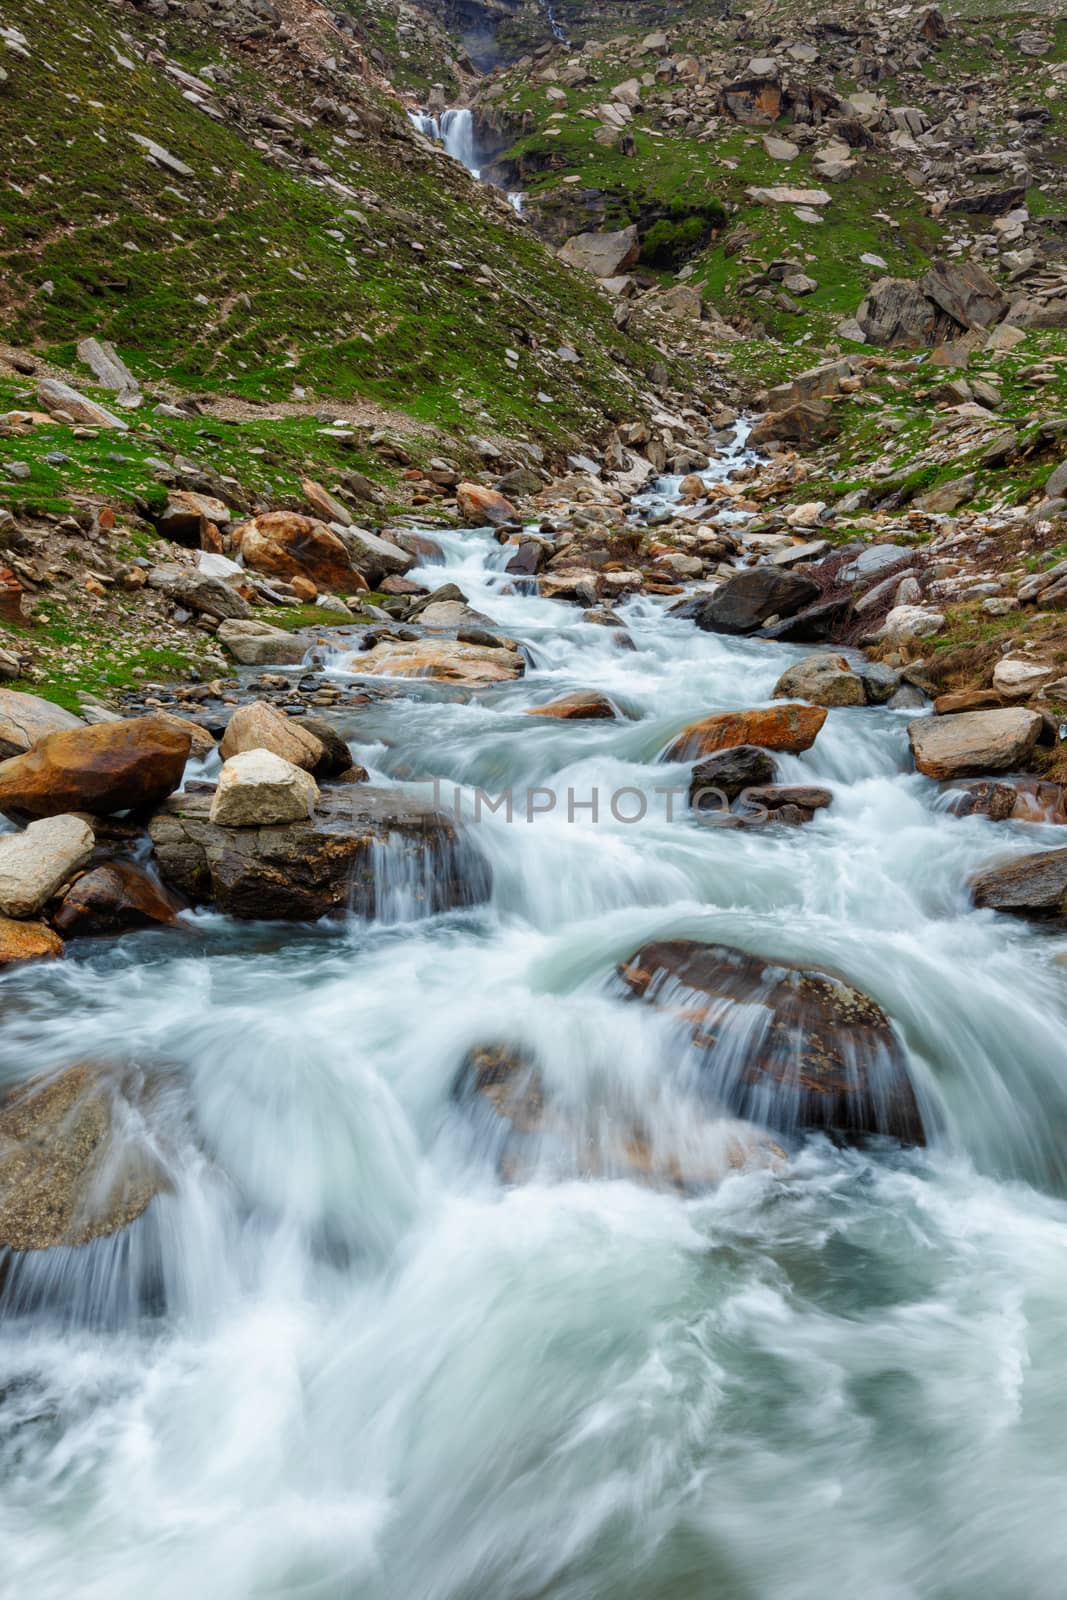 Waterfall in Himalayas mountains in Koksar, Lahaul Valley, Himachal Pradesh, India